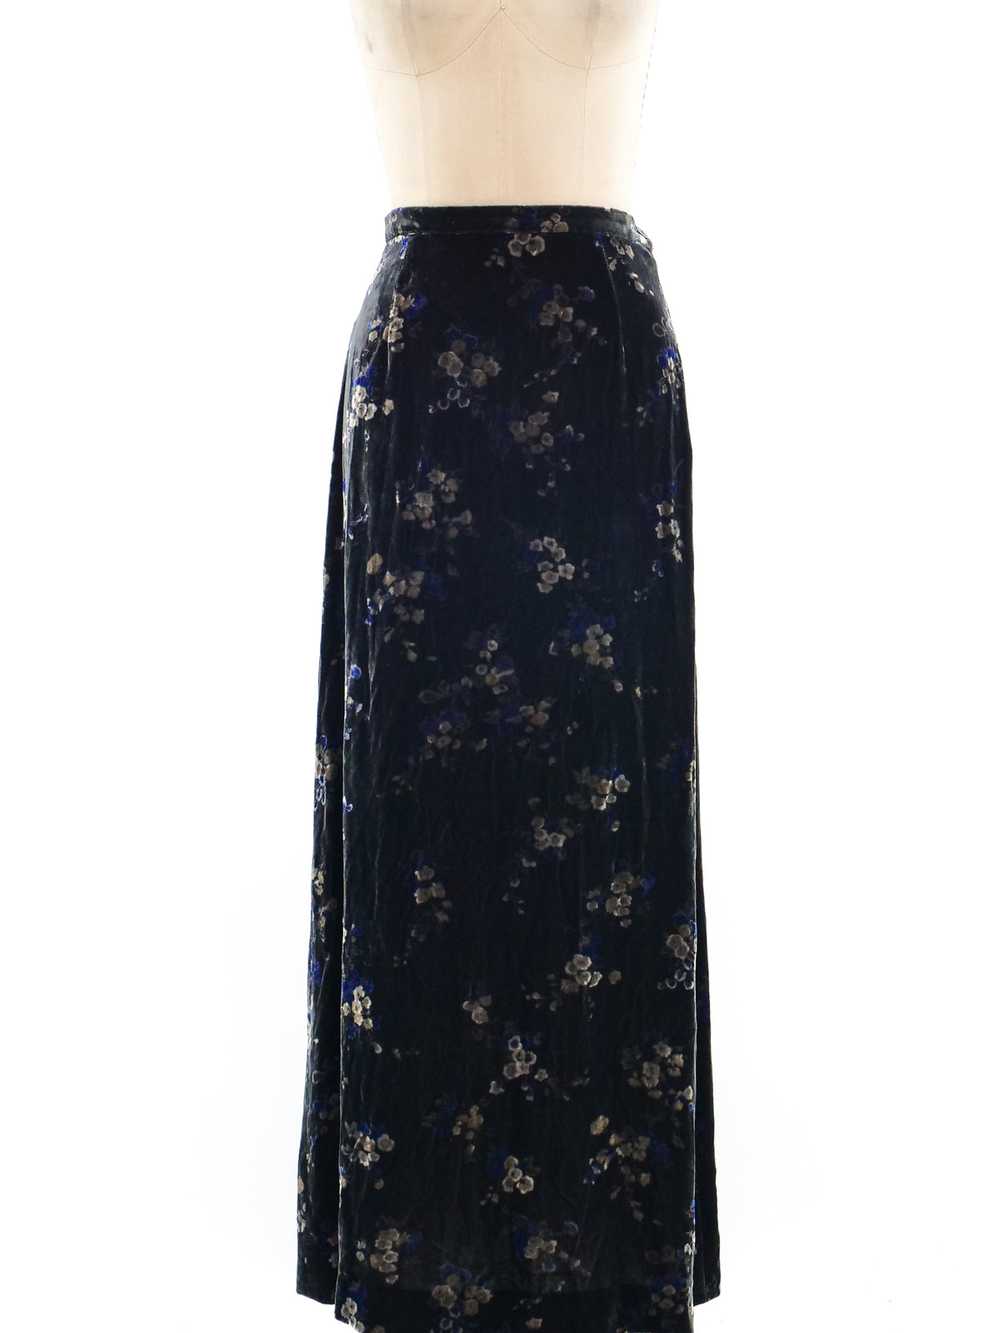 Ungaro Floral Velvet Skirt - image 1